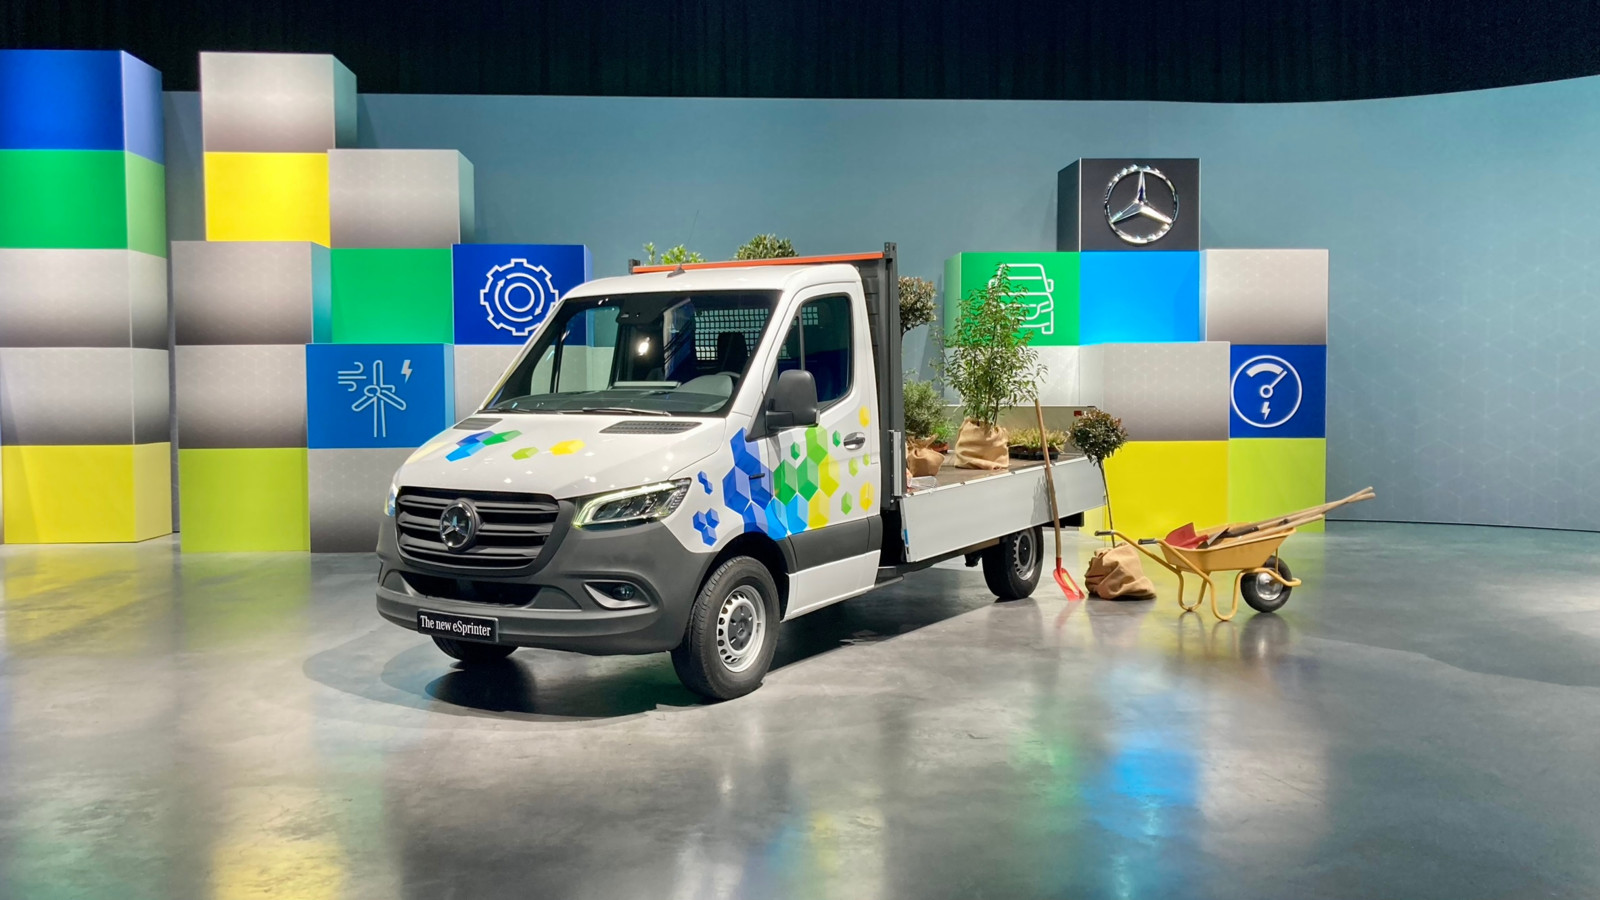 Mercedes-Benz Vans fokussiert sich – auch im Vertrieb – stark auf die Digitalisierung, das Produktportfolio wird elektrischer. Zeichen dafür: der neue e-Sprinter ab 2024.